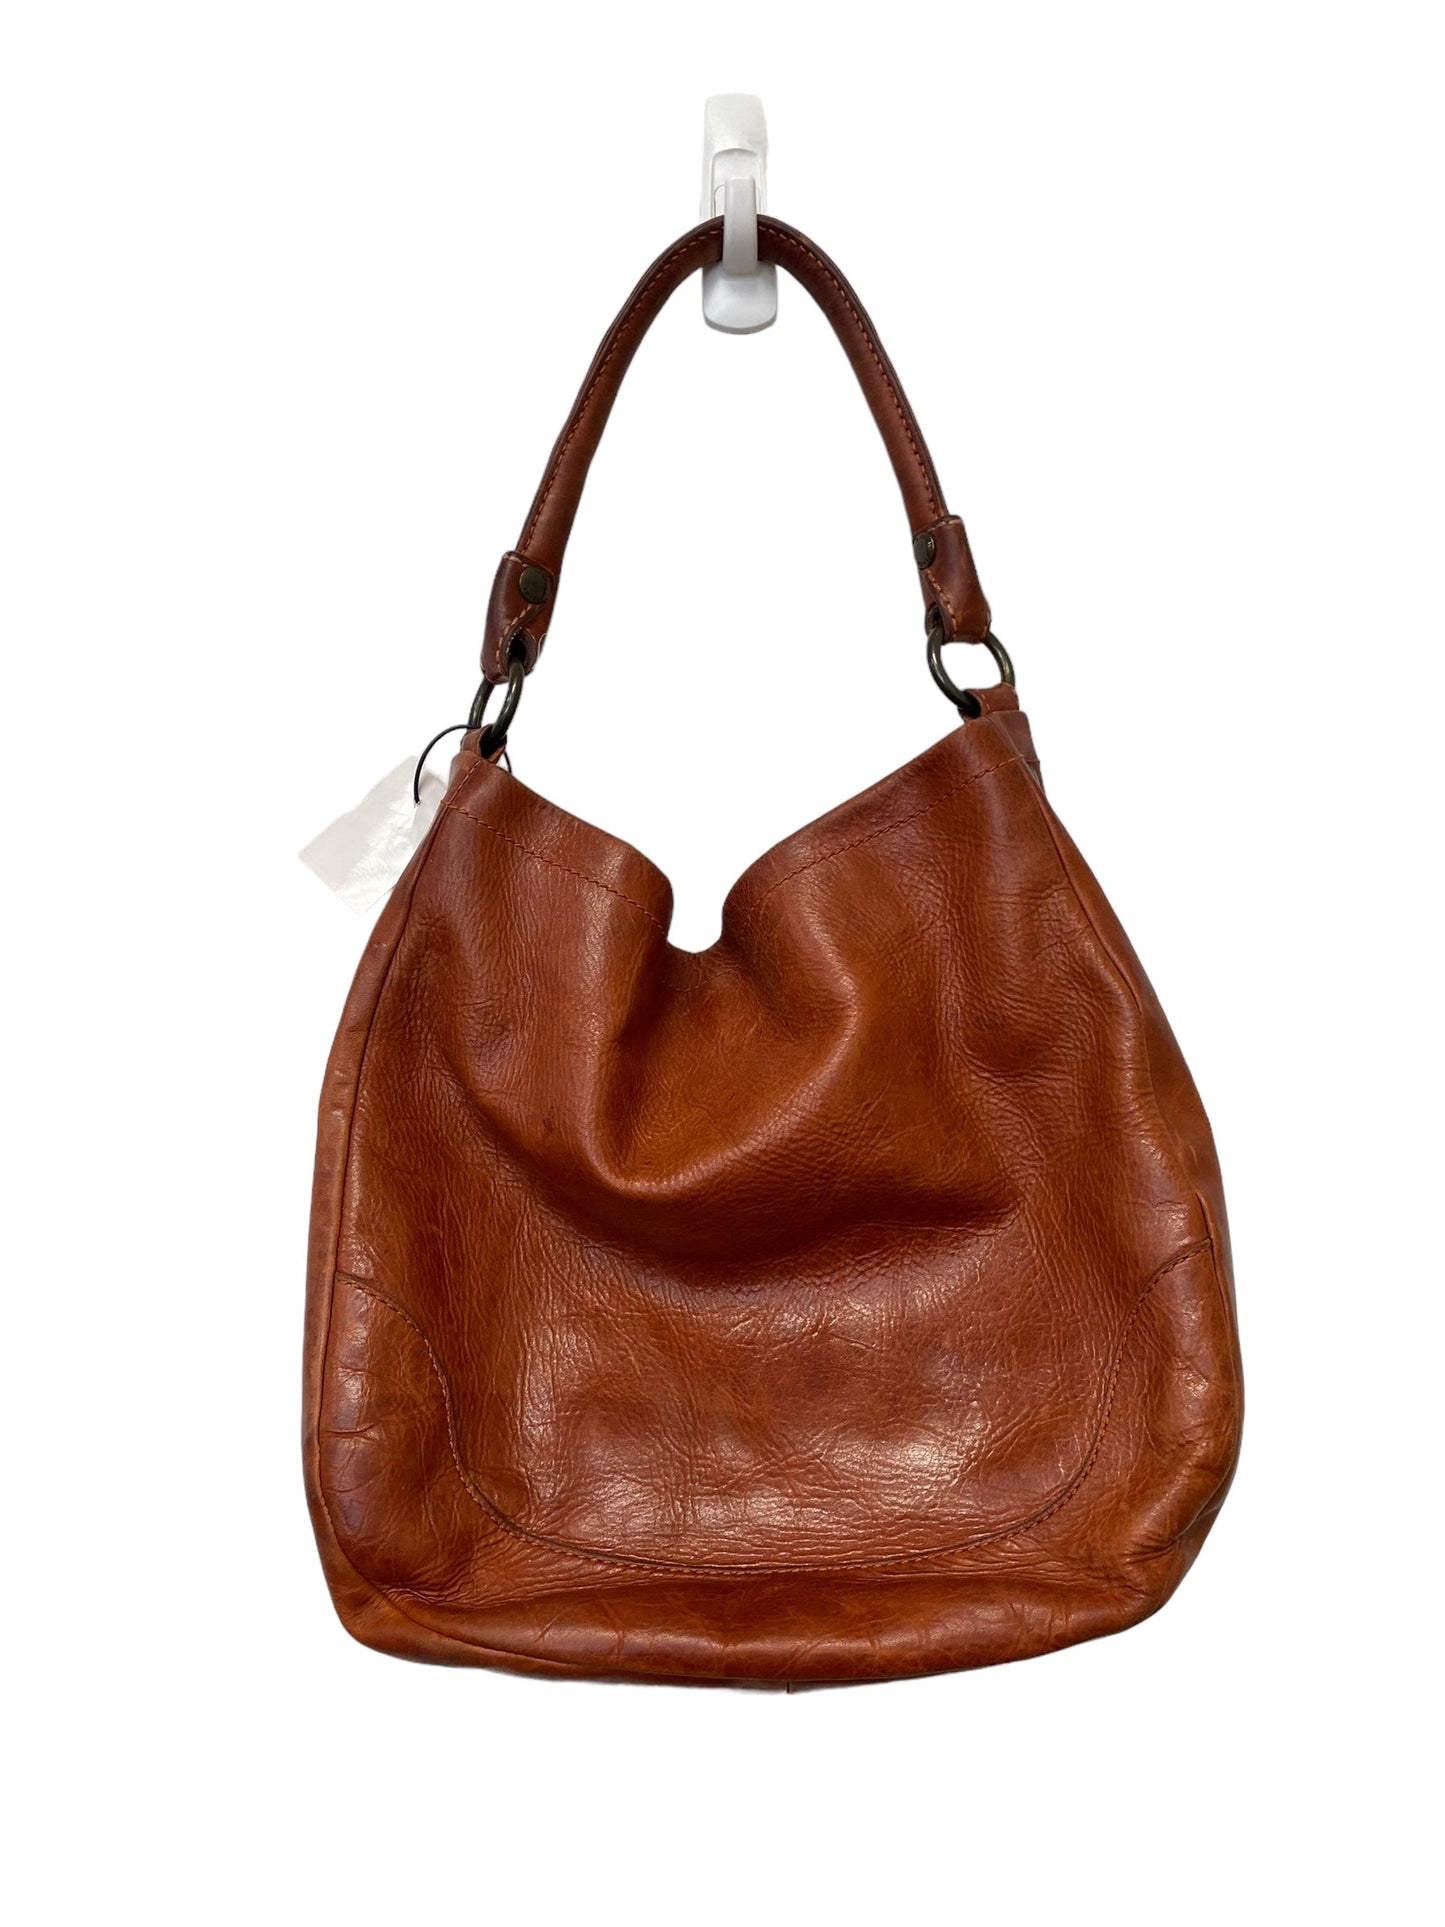 Handbag Designer Frye, Size Large